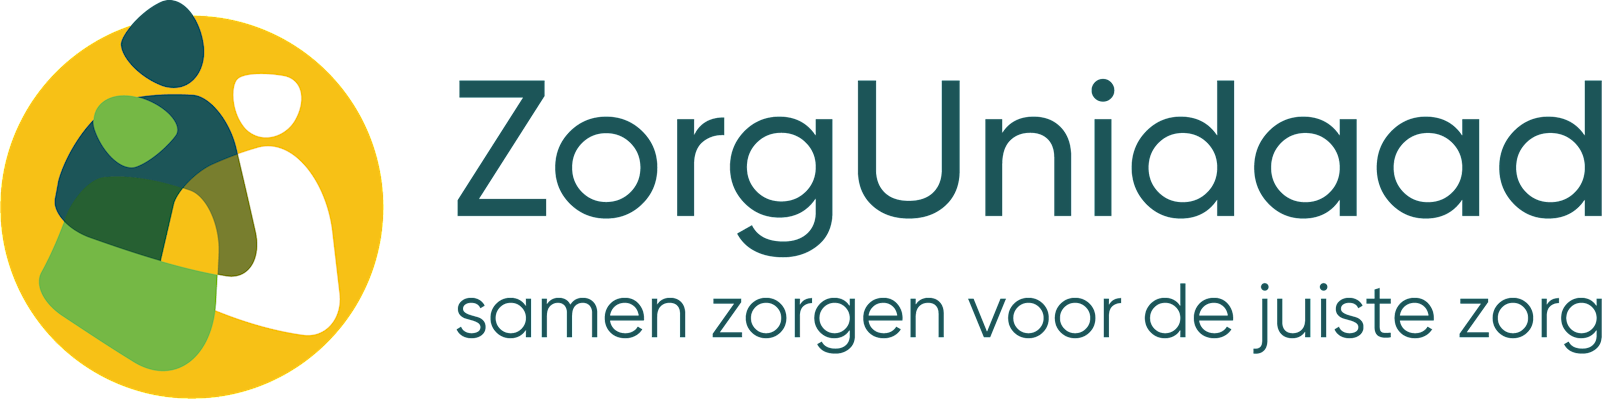 Logo ZorgUnidaad